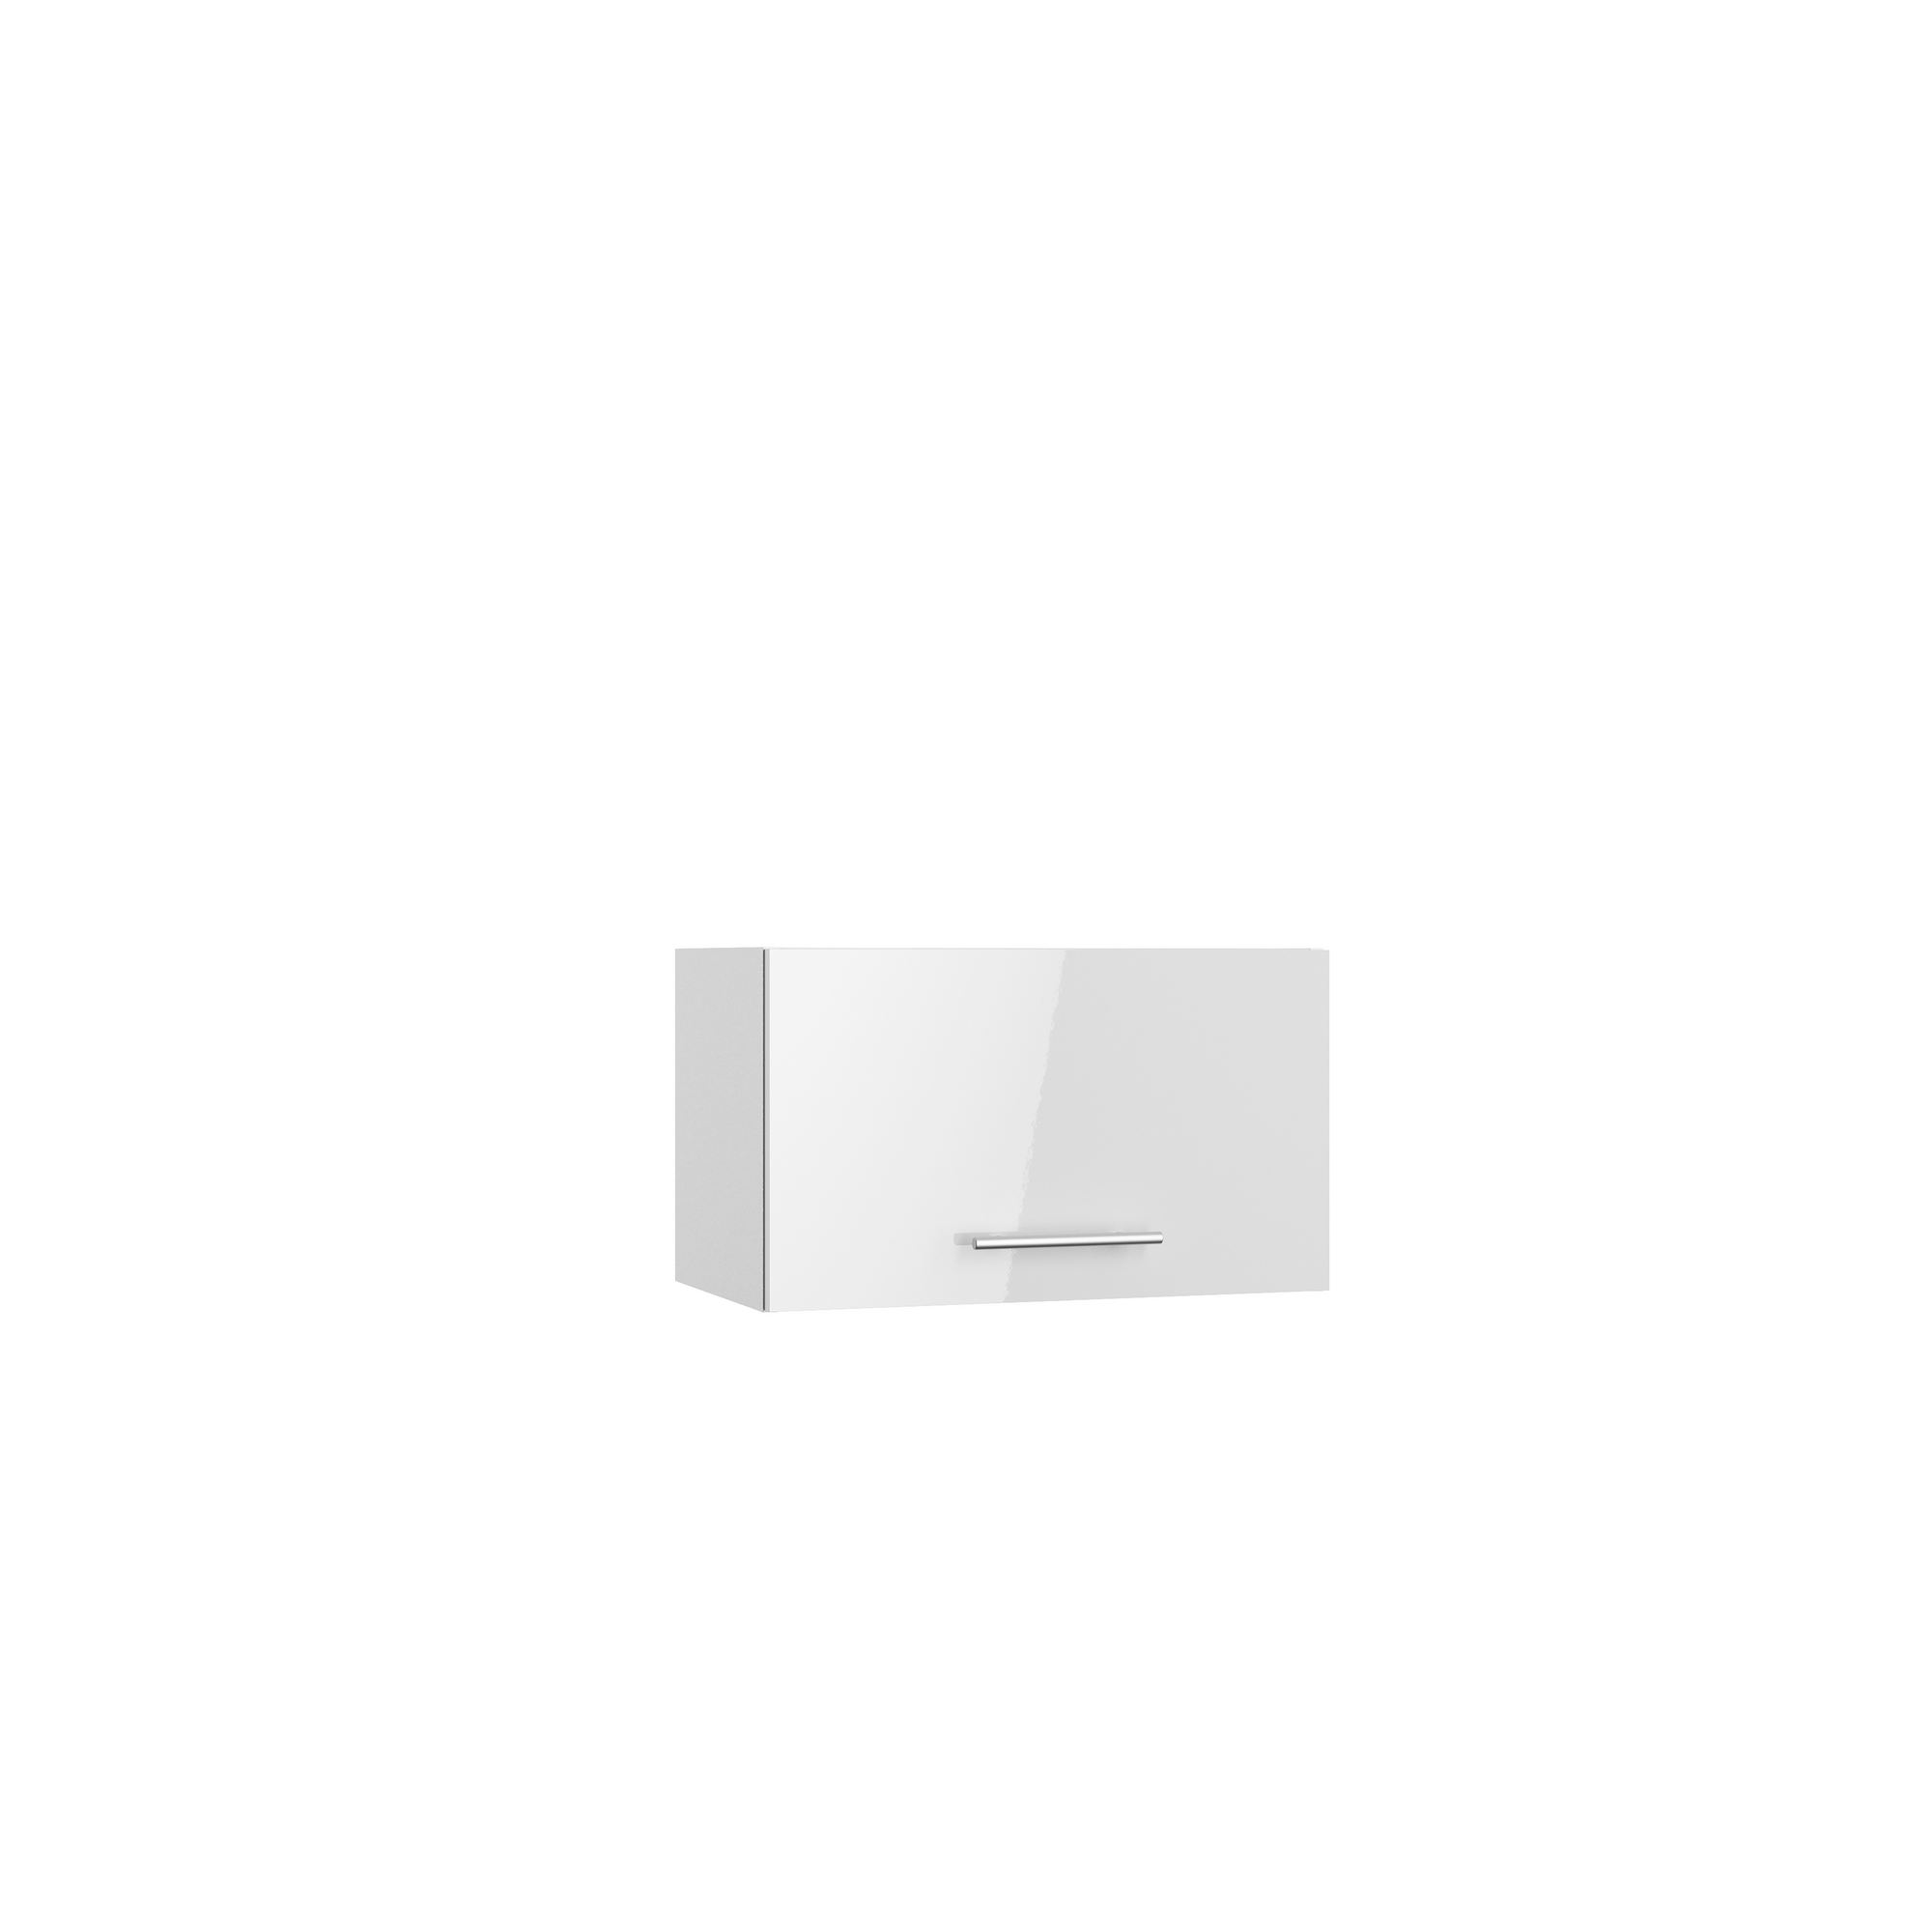 Oberschrank 'Optikomfort Rurik986' weiß 60 x 35,2 x 34,9 cm + product picture